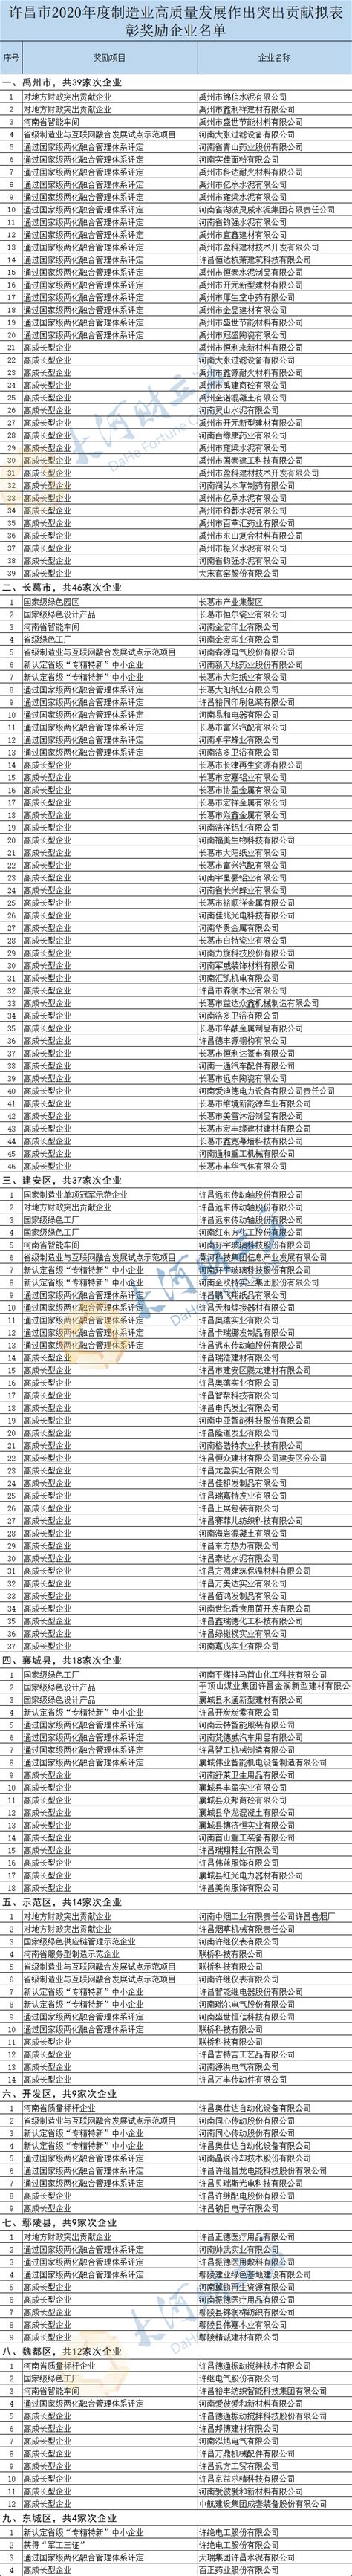 许昌市知名企业名单